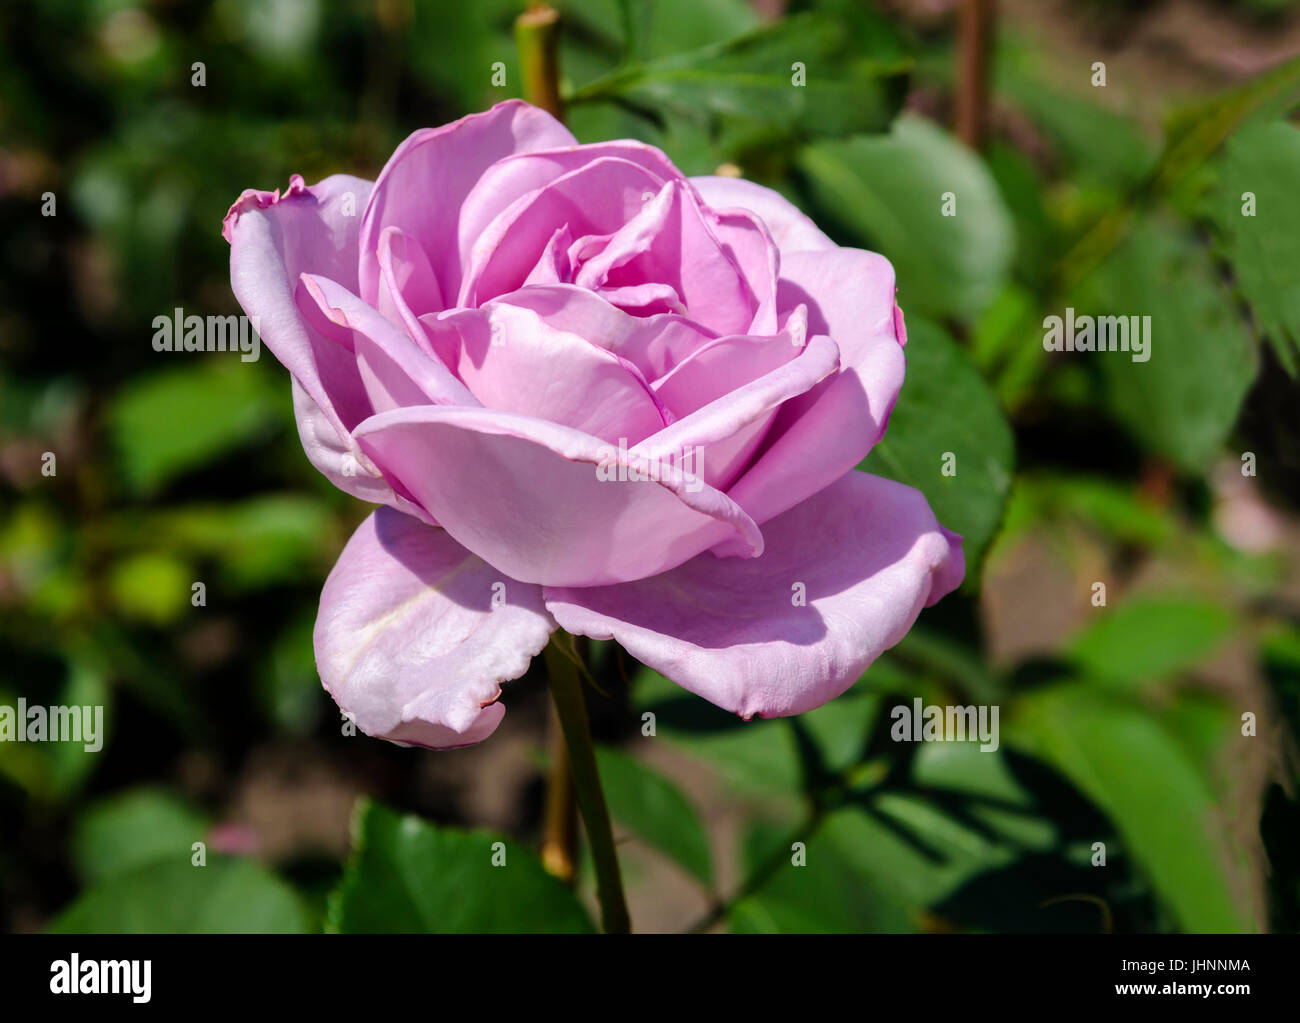 Bel fiore di una fragrante viola Rose sboccia in un giardino estivo contro uno sfondo di foglie verdi, close-up Foto Stock